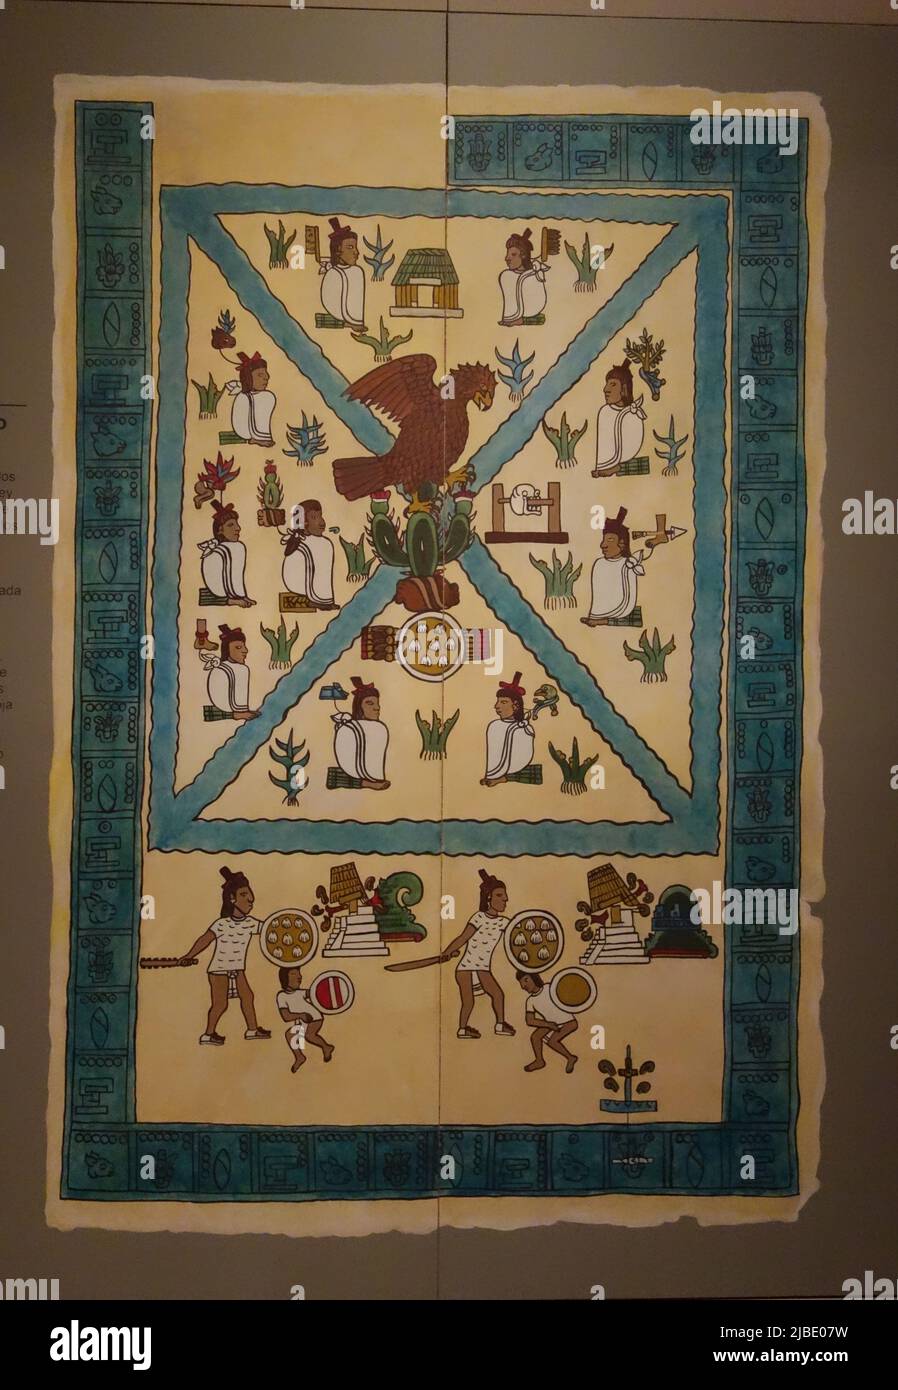 Immagine del Codice Prehispanico del Messico. Prima pagina del Mendocino Codex Museo de Monterrey Foto Stock